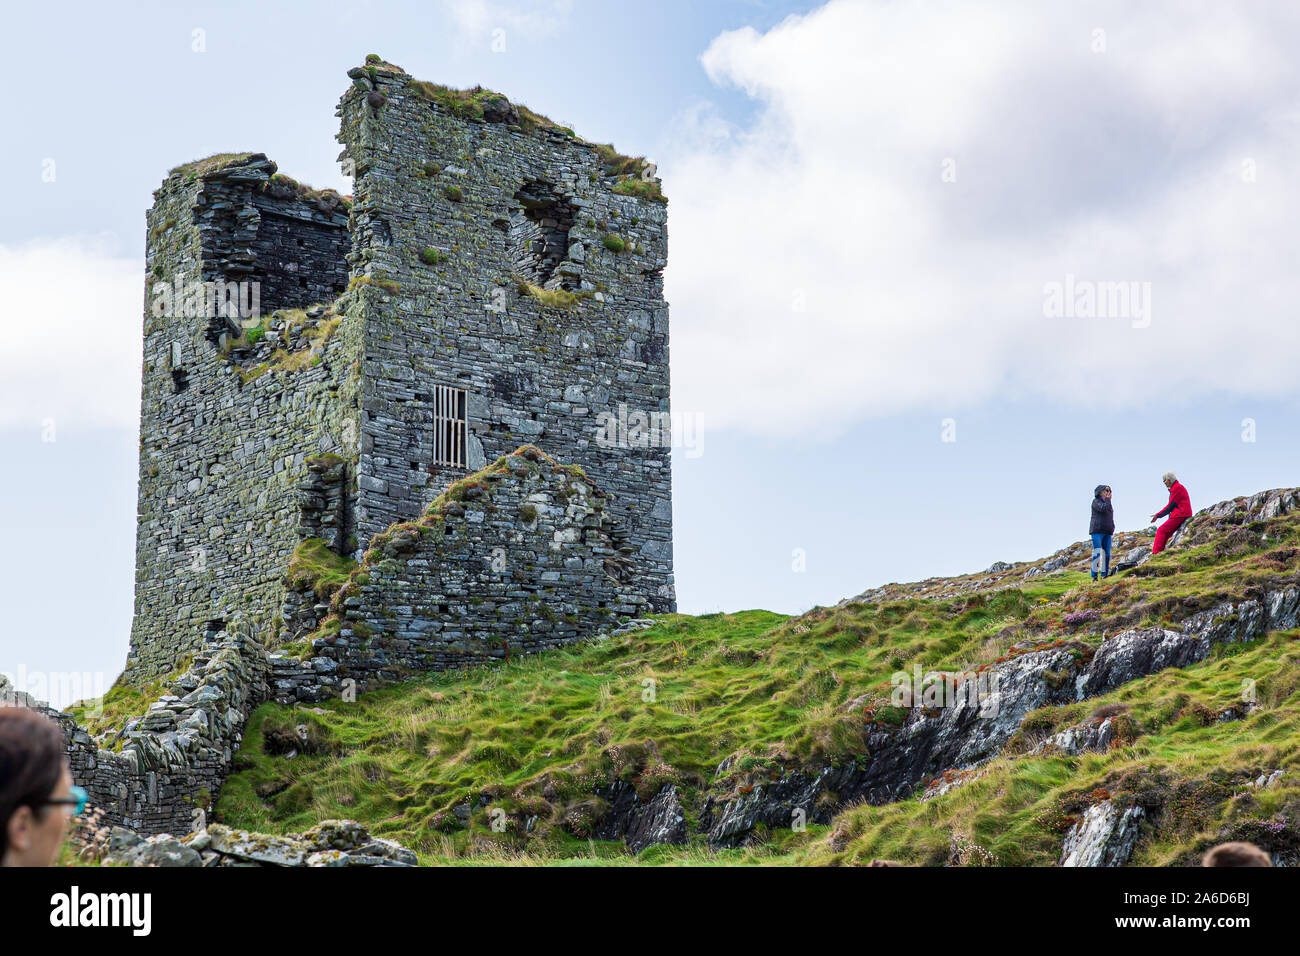 Scenic ruines de trois châteaux tête ou Dunlough château situé en haut des falaises à l'extrémité nord de la péninsule de Mizen. Paysages irlandais. Banque D'Images